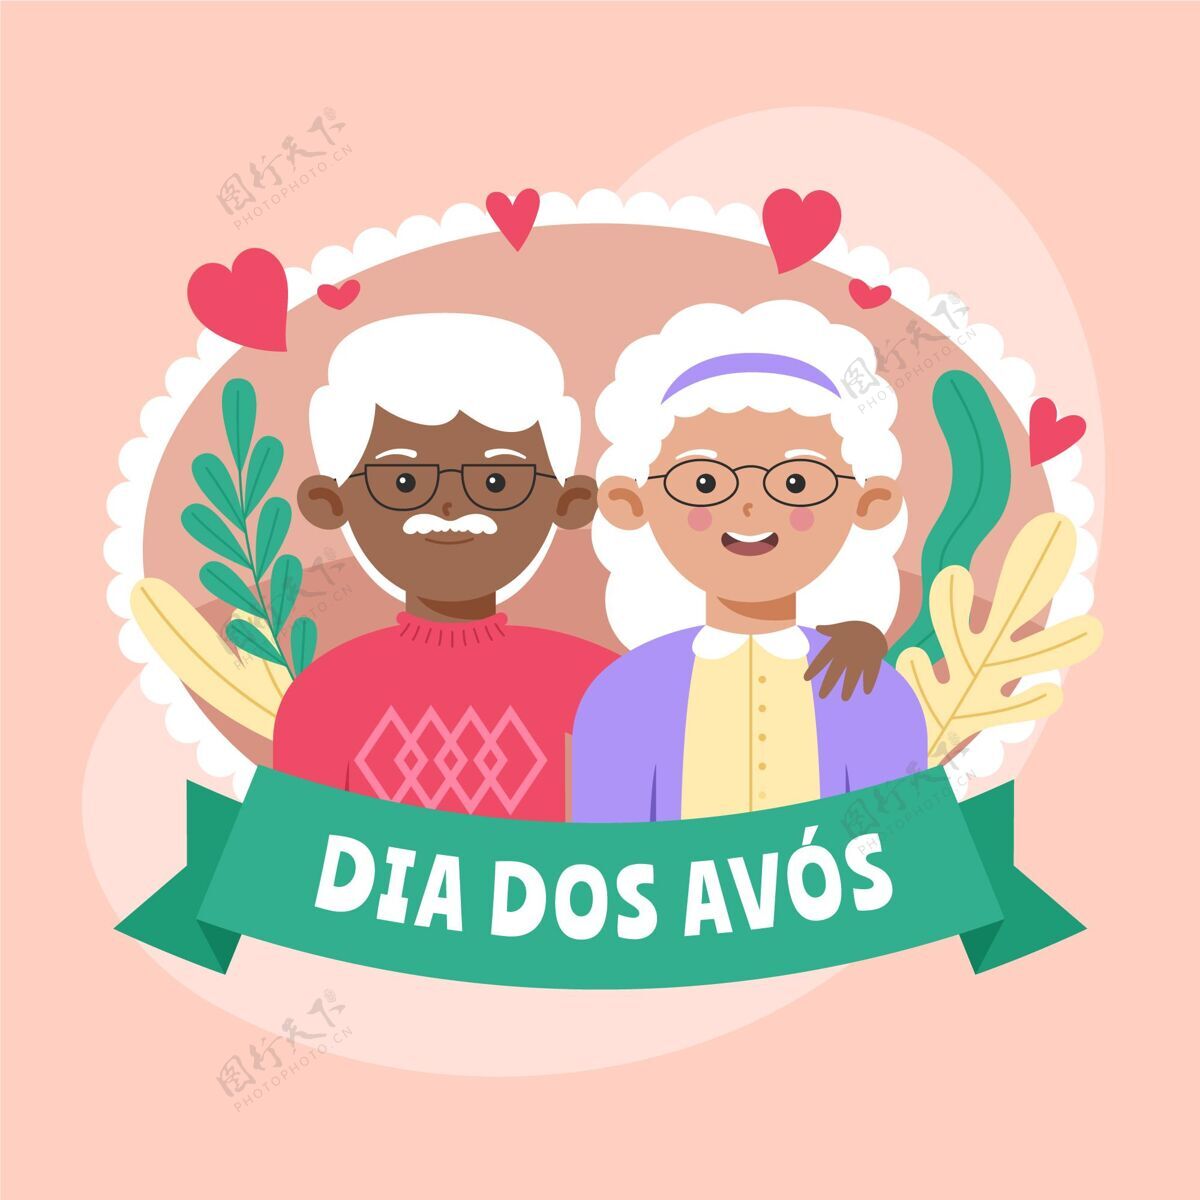 节日迪亚多斯阿沃斯与祖父母的插图祖父母活动庆祝